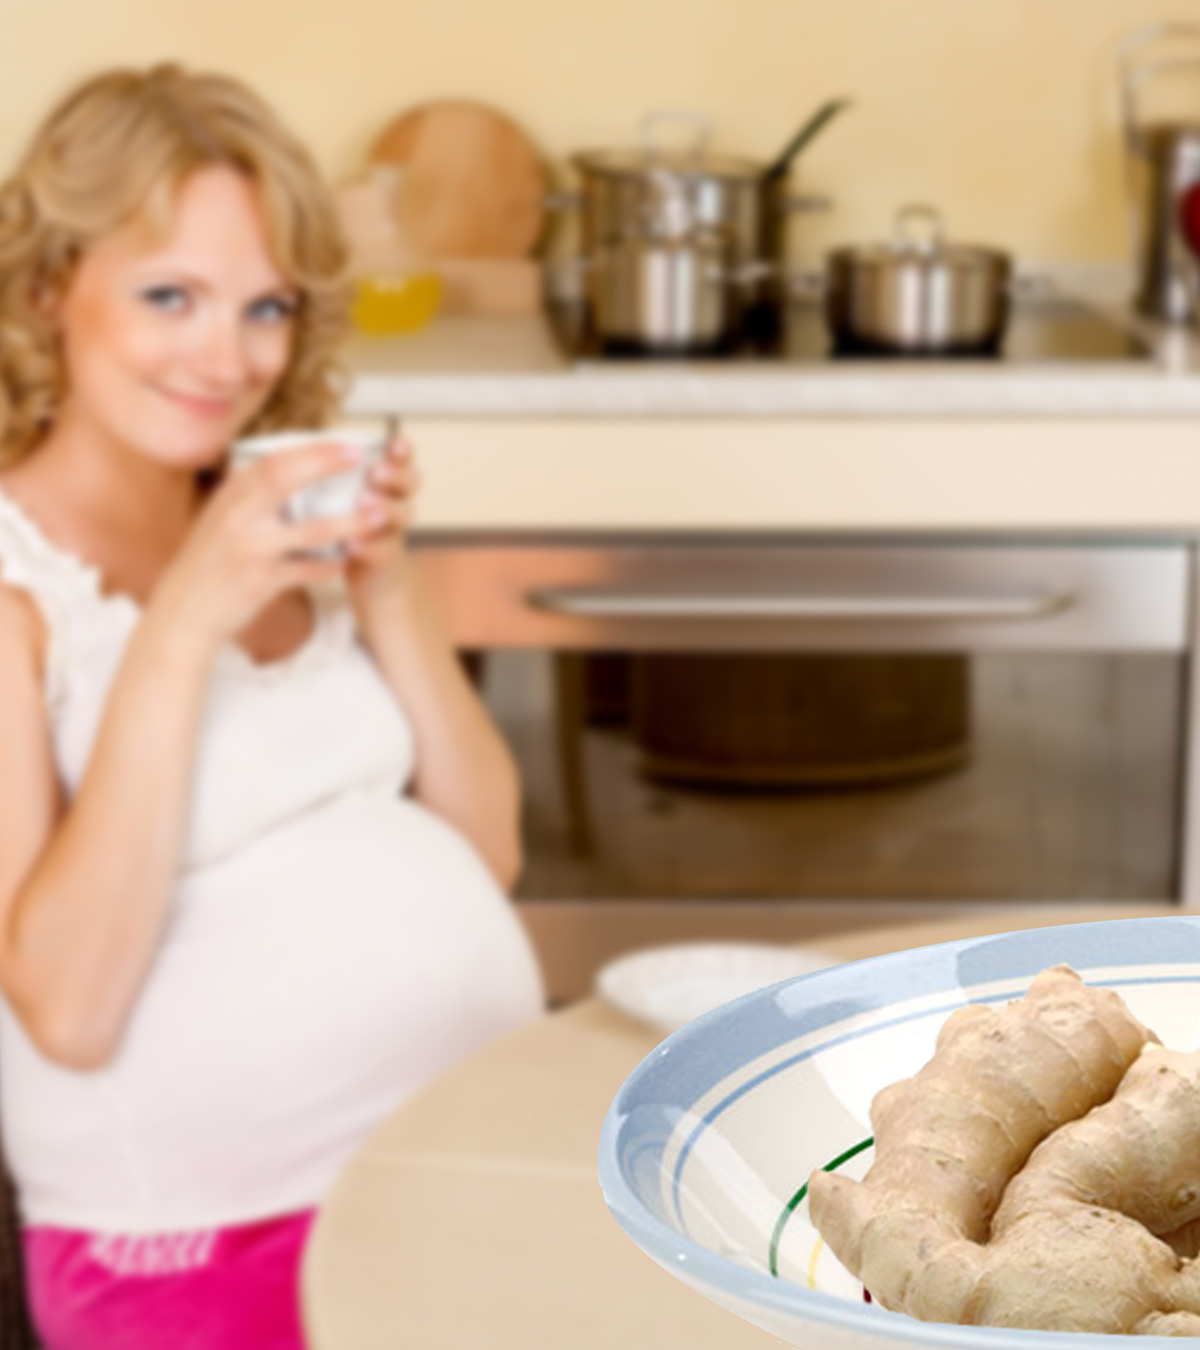 Ginger Tea During Pregnancy: Benefits, Safety Concerns & Risks